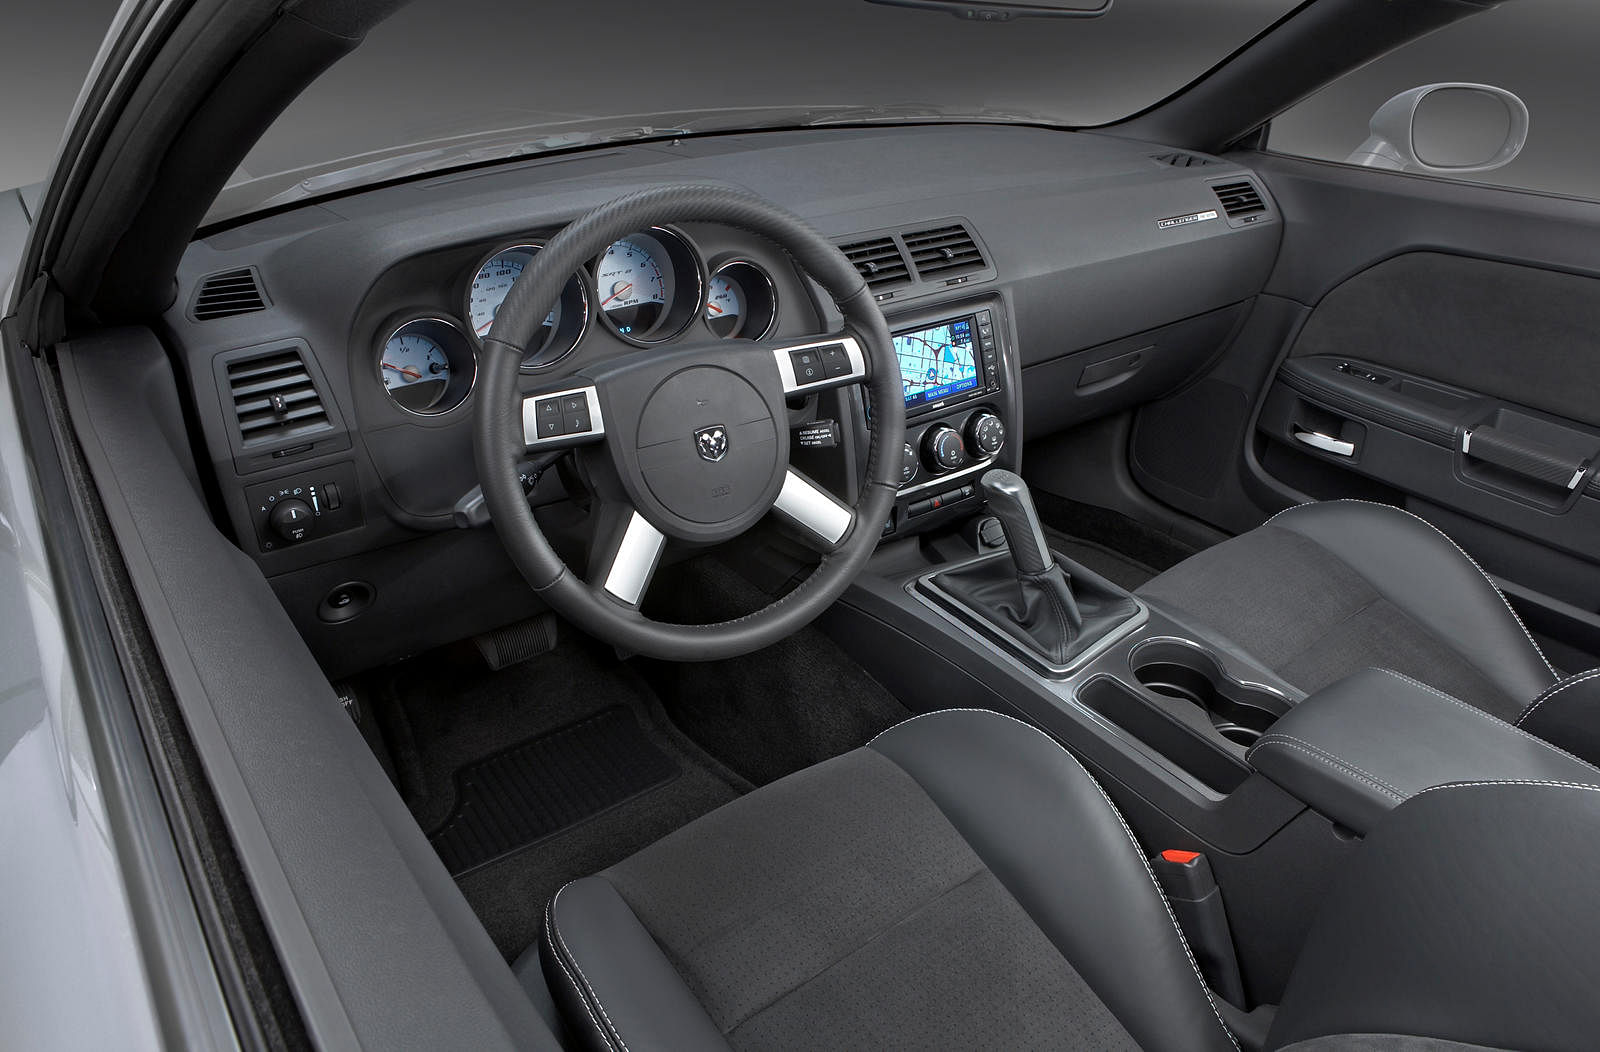 2010 Dodge Challenger SRT8 Review & Test Drive | Automotive Addicts